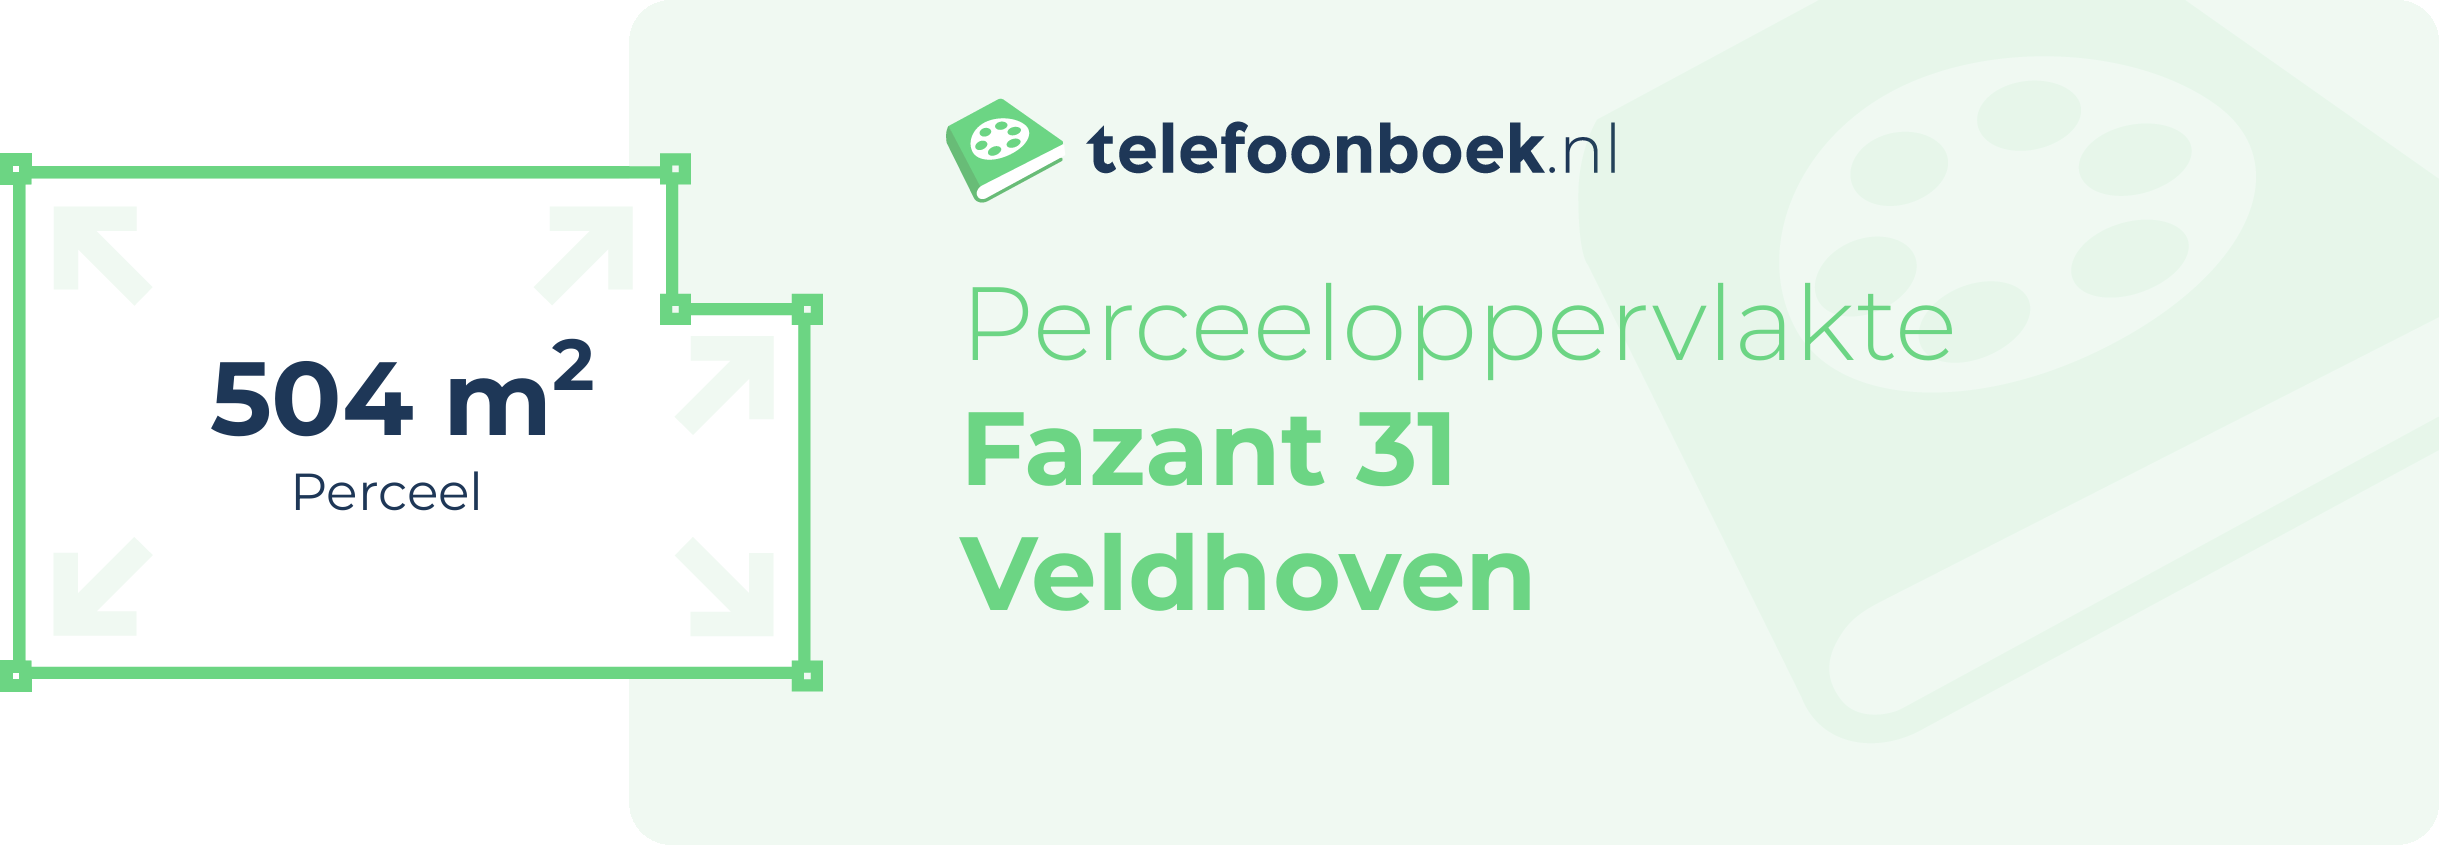 Perceeloppervlakte Fazant 31 Veldhoven